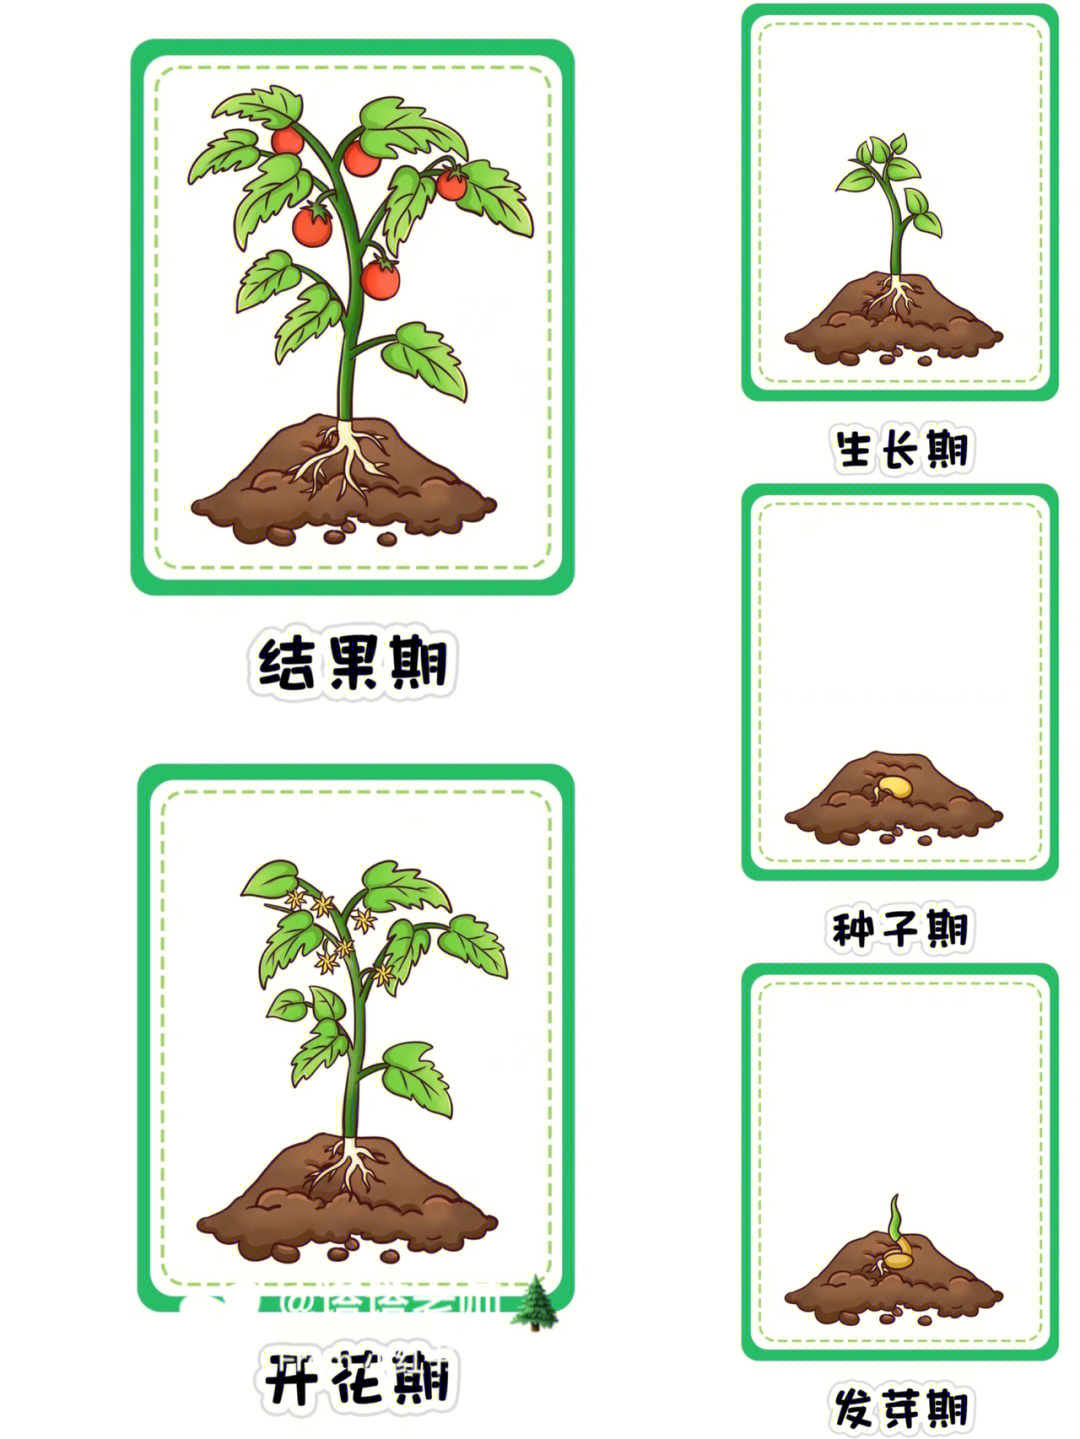 种子发芽的过程简单图片